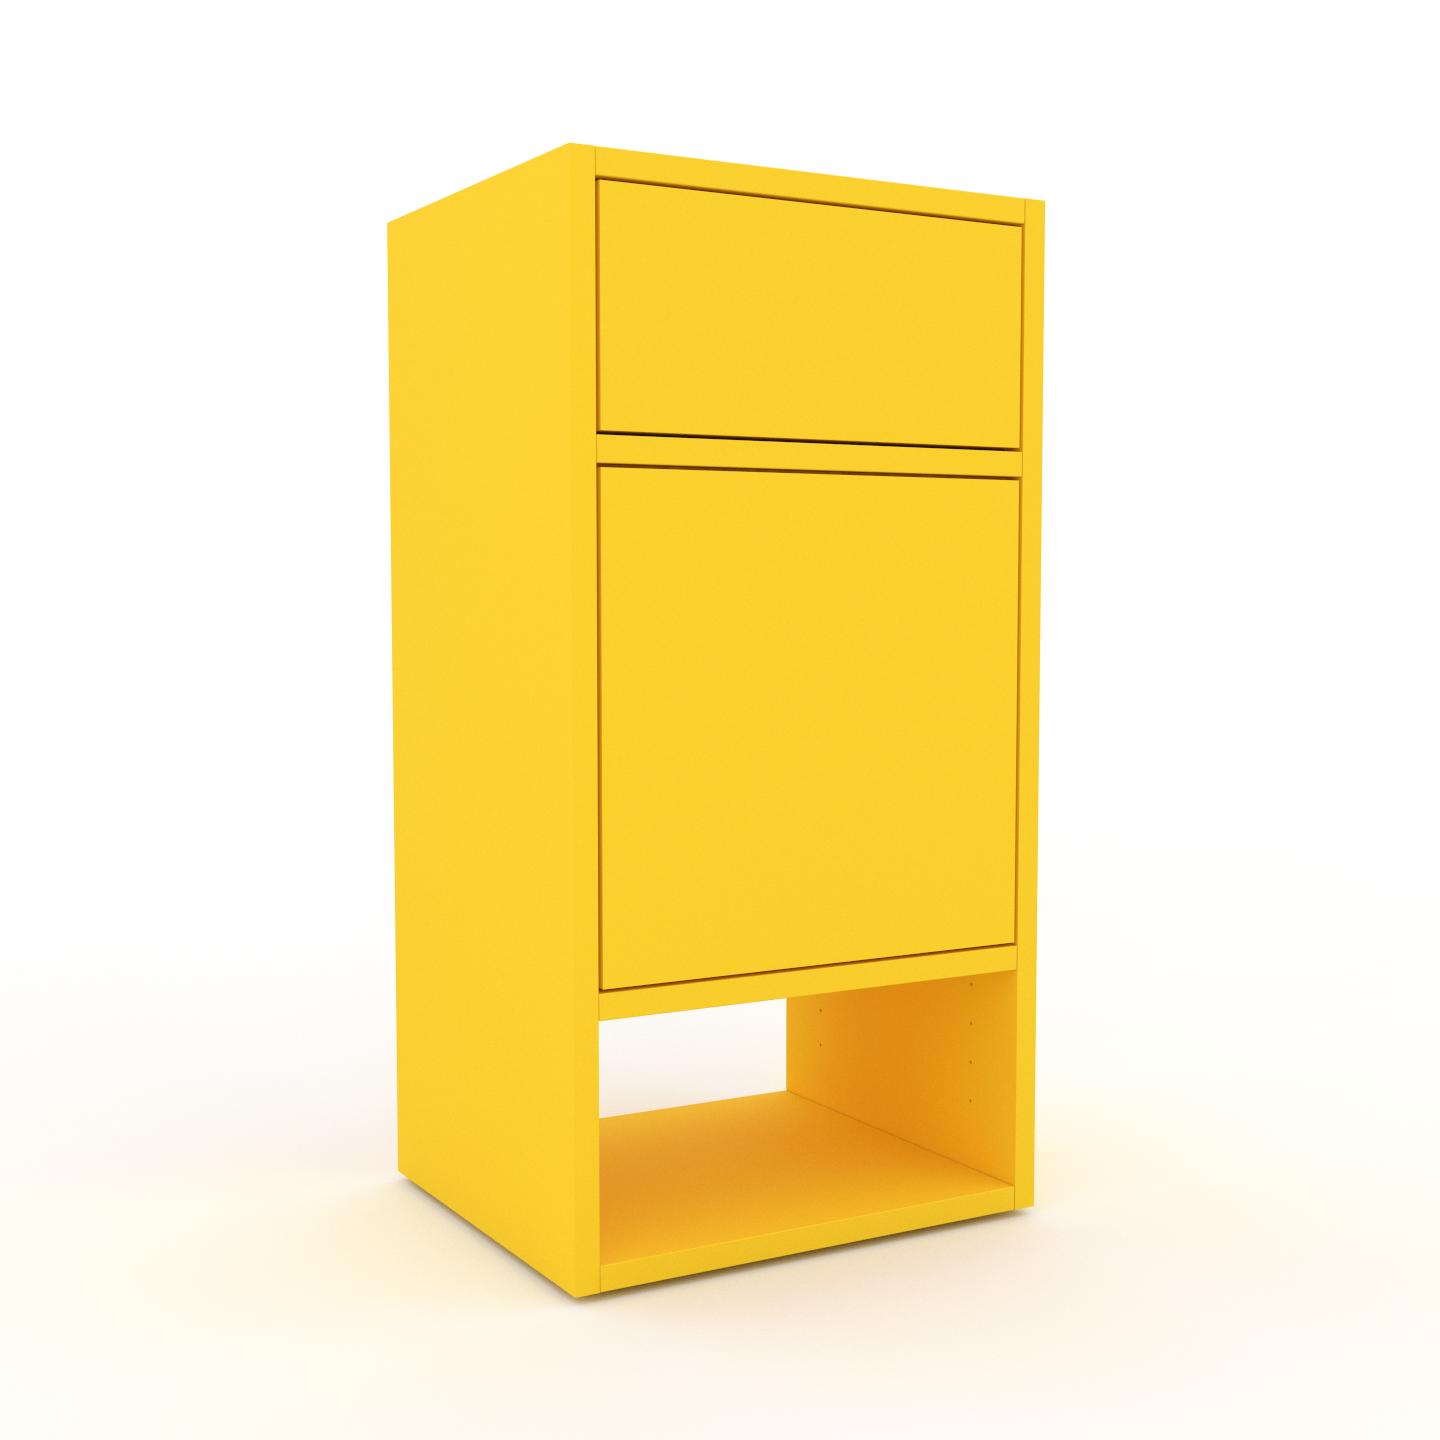 MYCS Rollcontainer Gelb - Rollcontainer: Schubladen in Gelb & Türen in Gelb - 41 x 80 x 35 cm, konfigurierbar